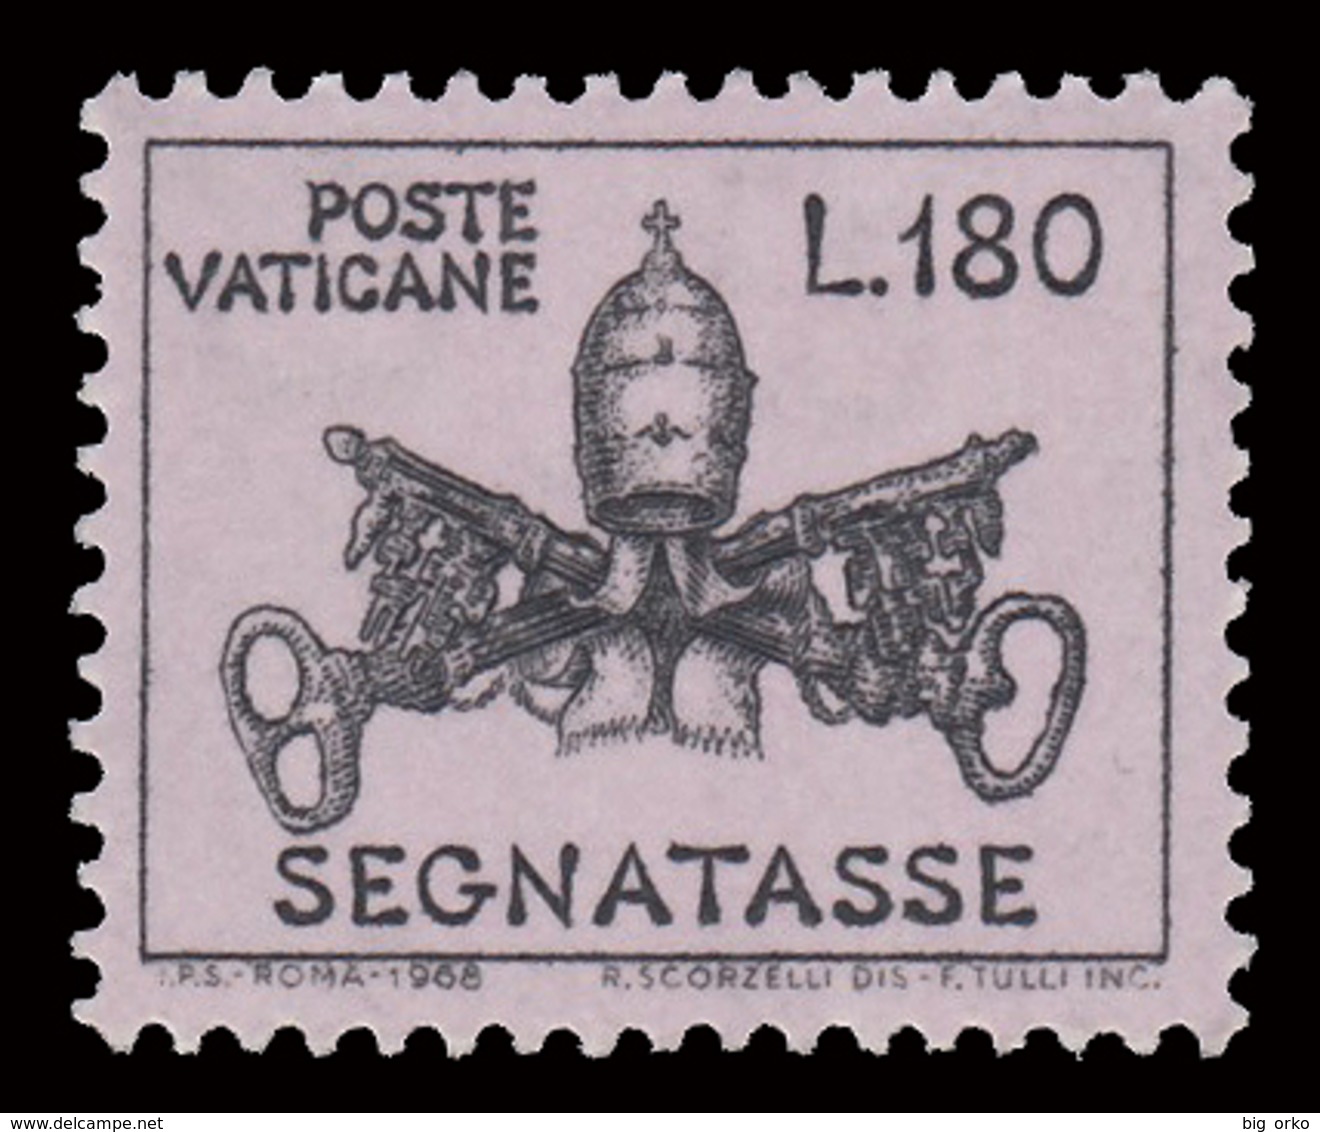 SEGNATASSE Vaticano - PONTIFICATO PAOLO VI - Triregno E Chiavi Decussate - Lire 180 Malva Chiaro - 1968 - Postage Due